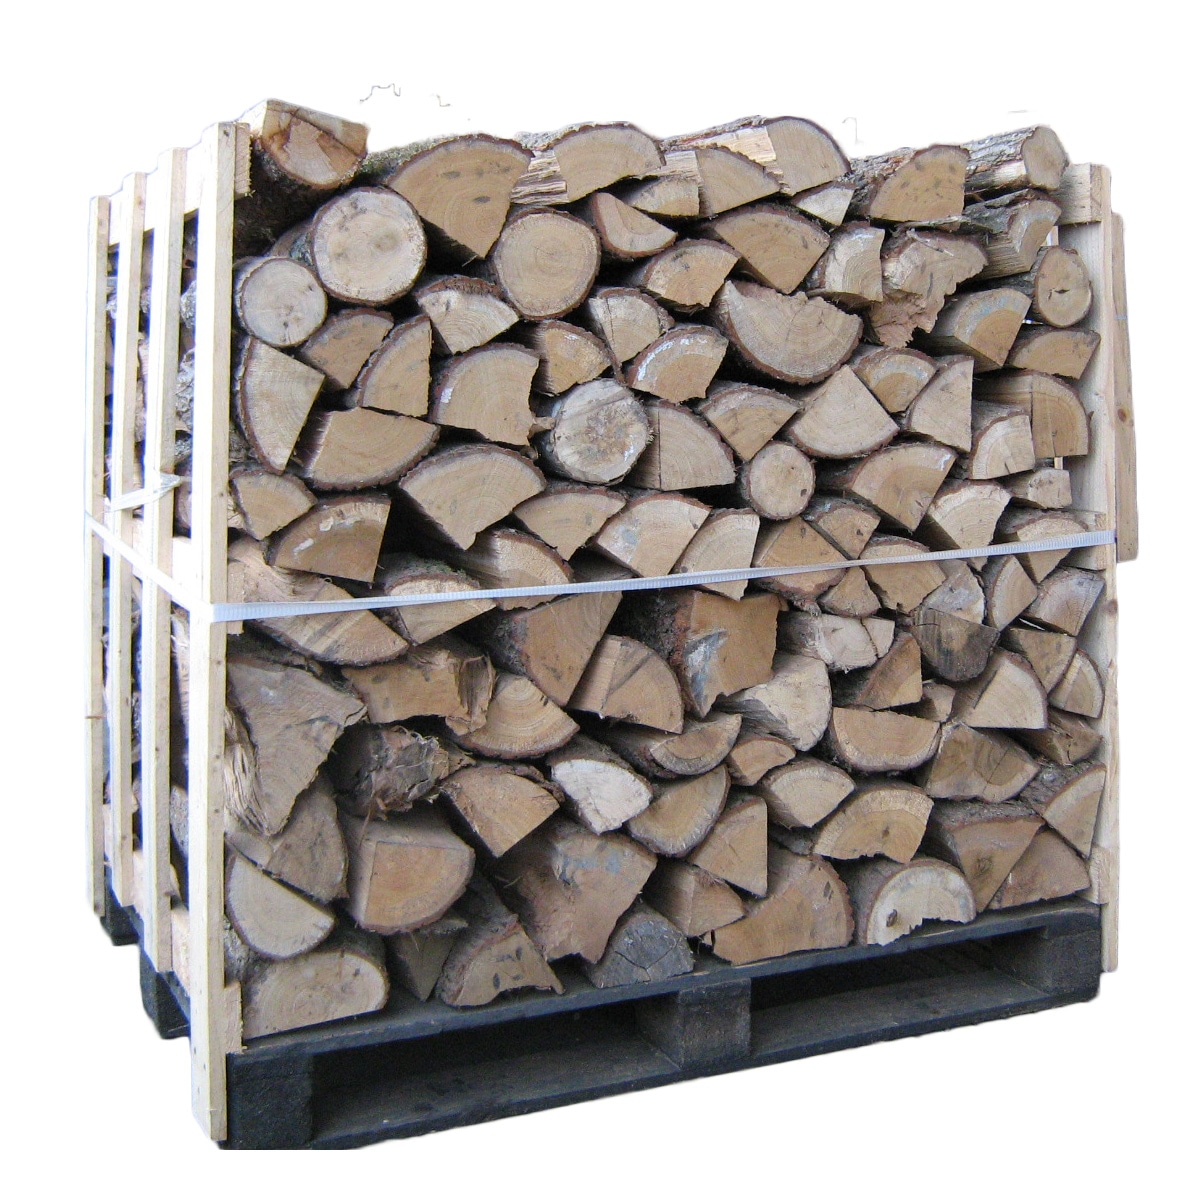 1 stères de bois de chauffage chêne sec bûches de 50cm - Mr.Bricolage